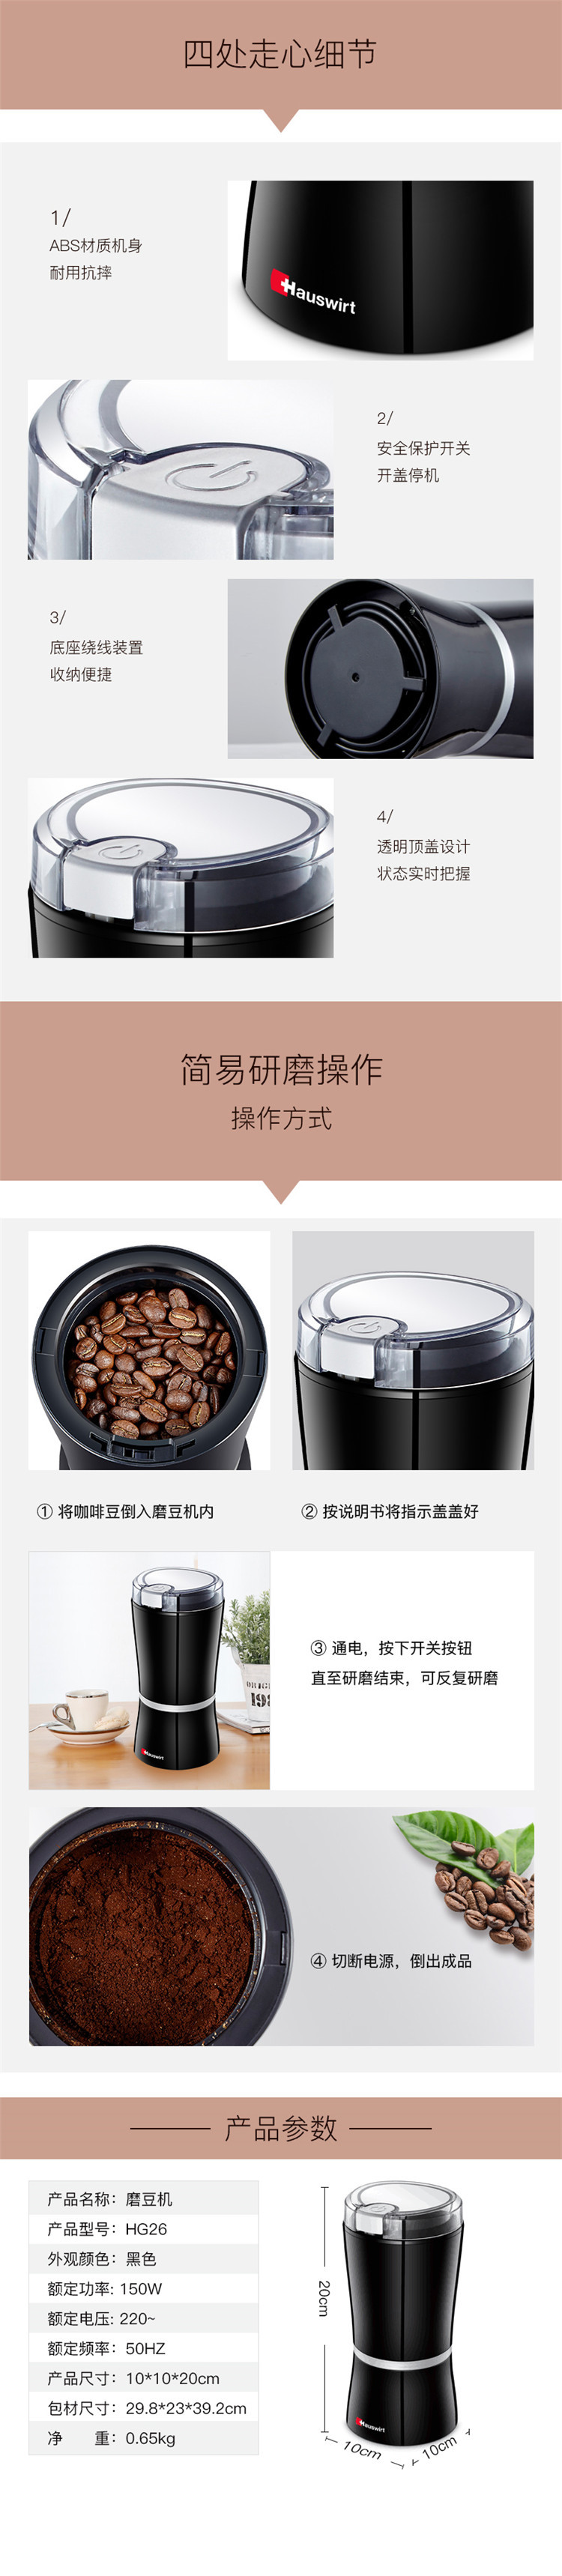 海氏 磨豆机 研磨机 电动家用磨咖啡豆机咖啡机意式咖啡磨粉机 HG26